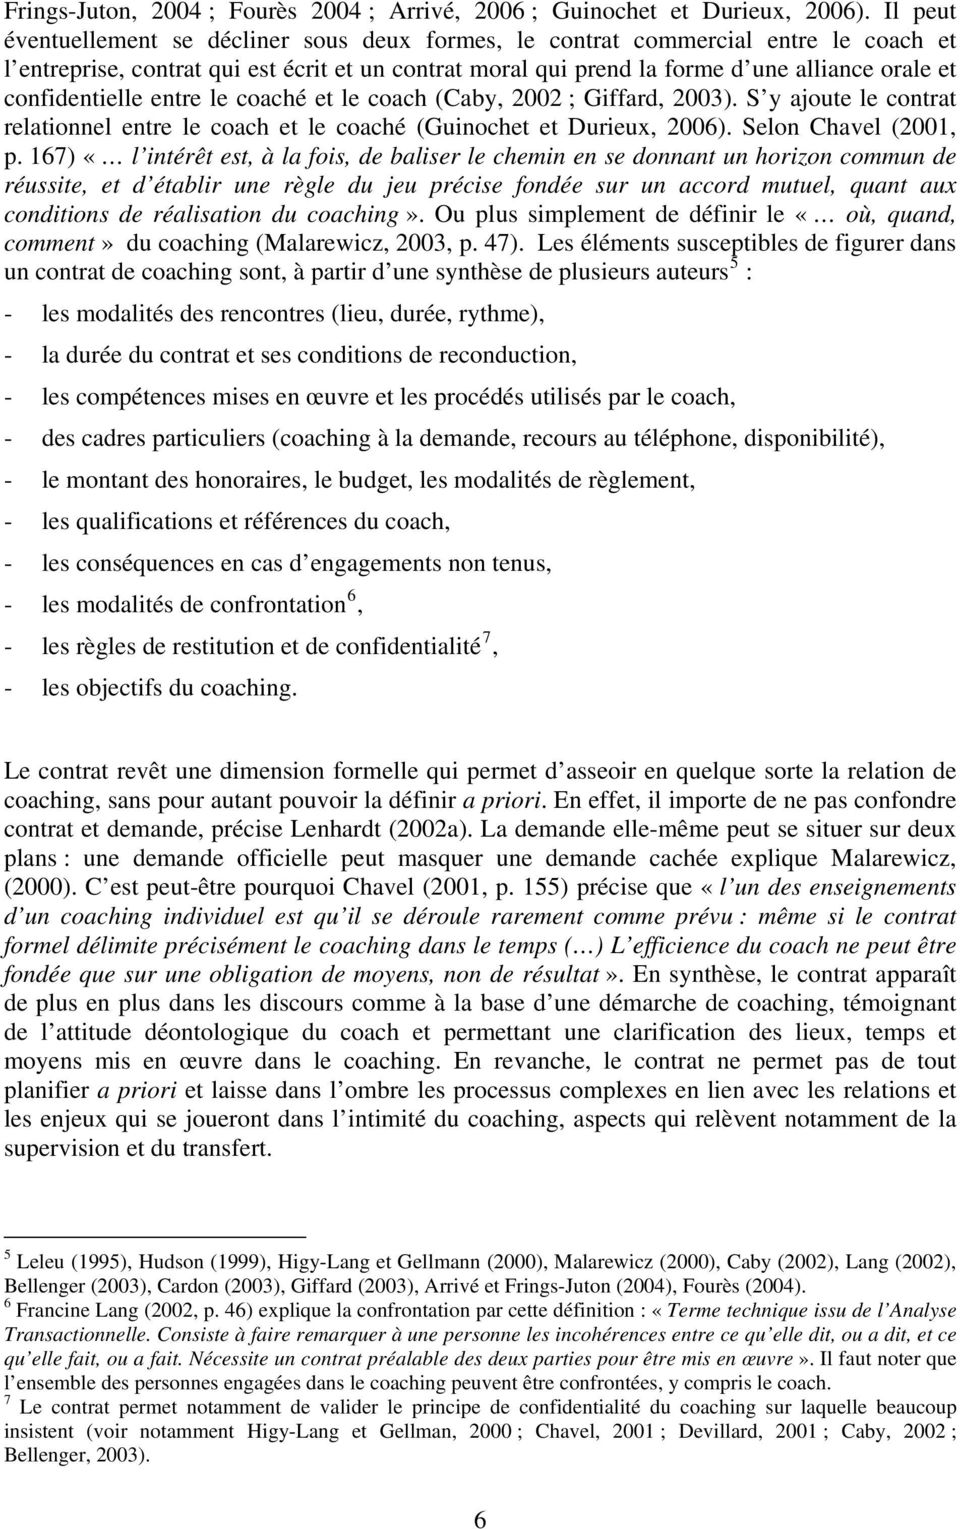 confidentielle entre le coaché et le coach (Caby, 2002 ; Giffard, 2003). S y ajoute le contrat relationnel entre le coach et le coaché (Guinochet et Durieux, 2006). Selon Chavel (2001, p.